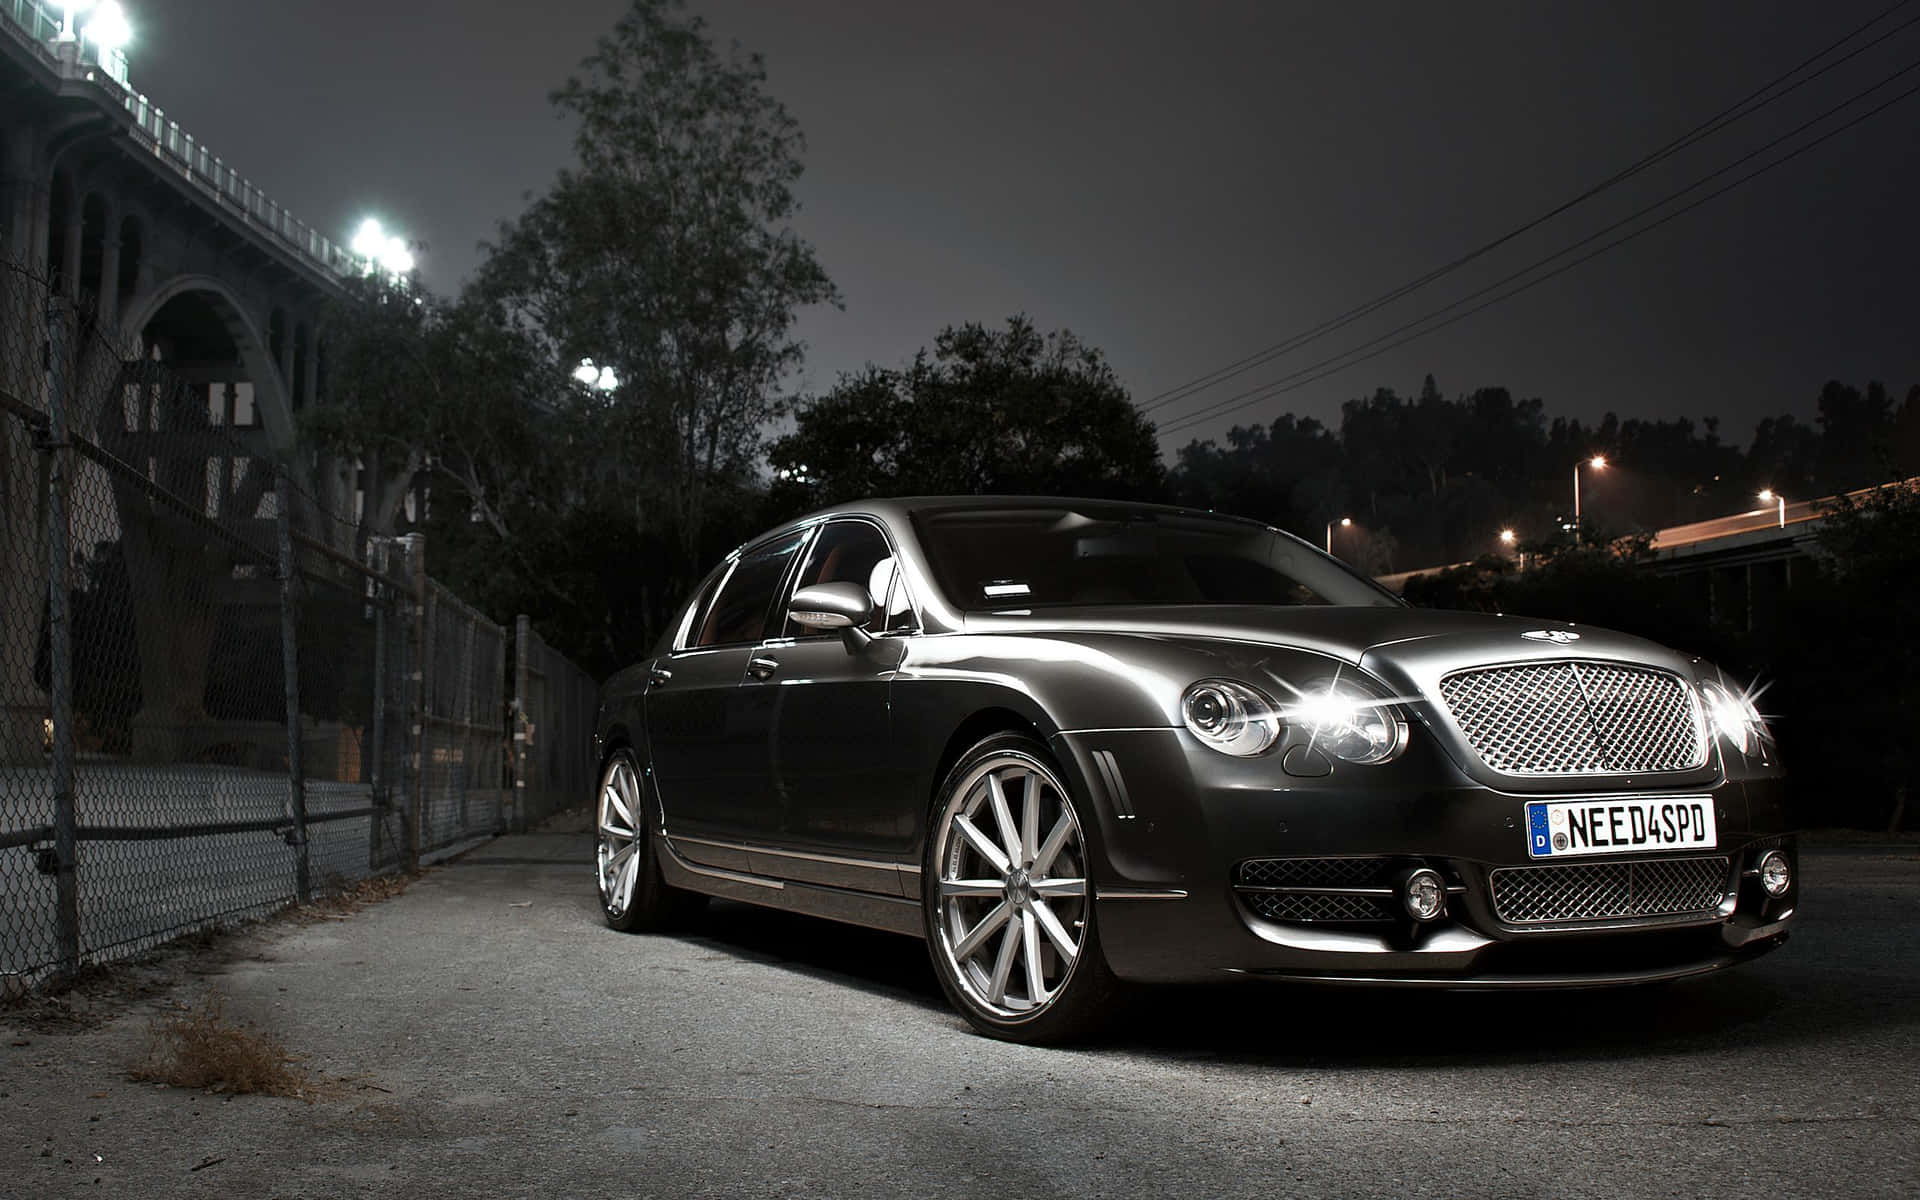 Klassischund Luxuriös: Mit Einem Alten Bentley Fahren. Wallpaper